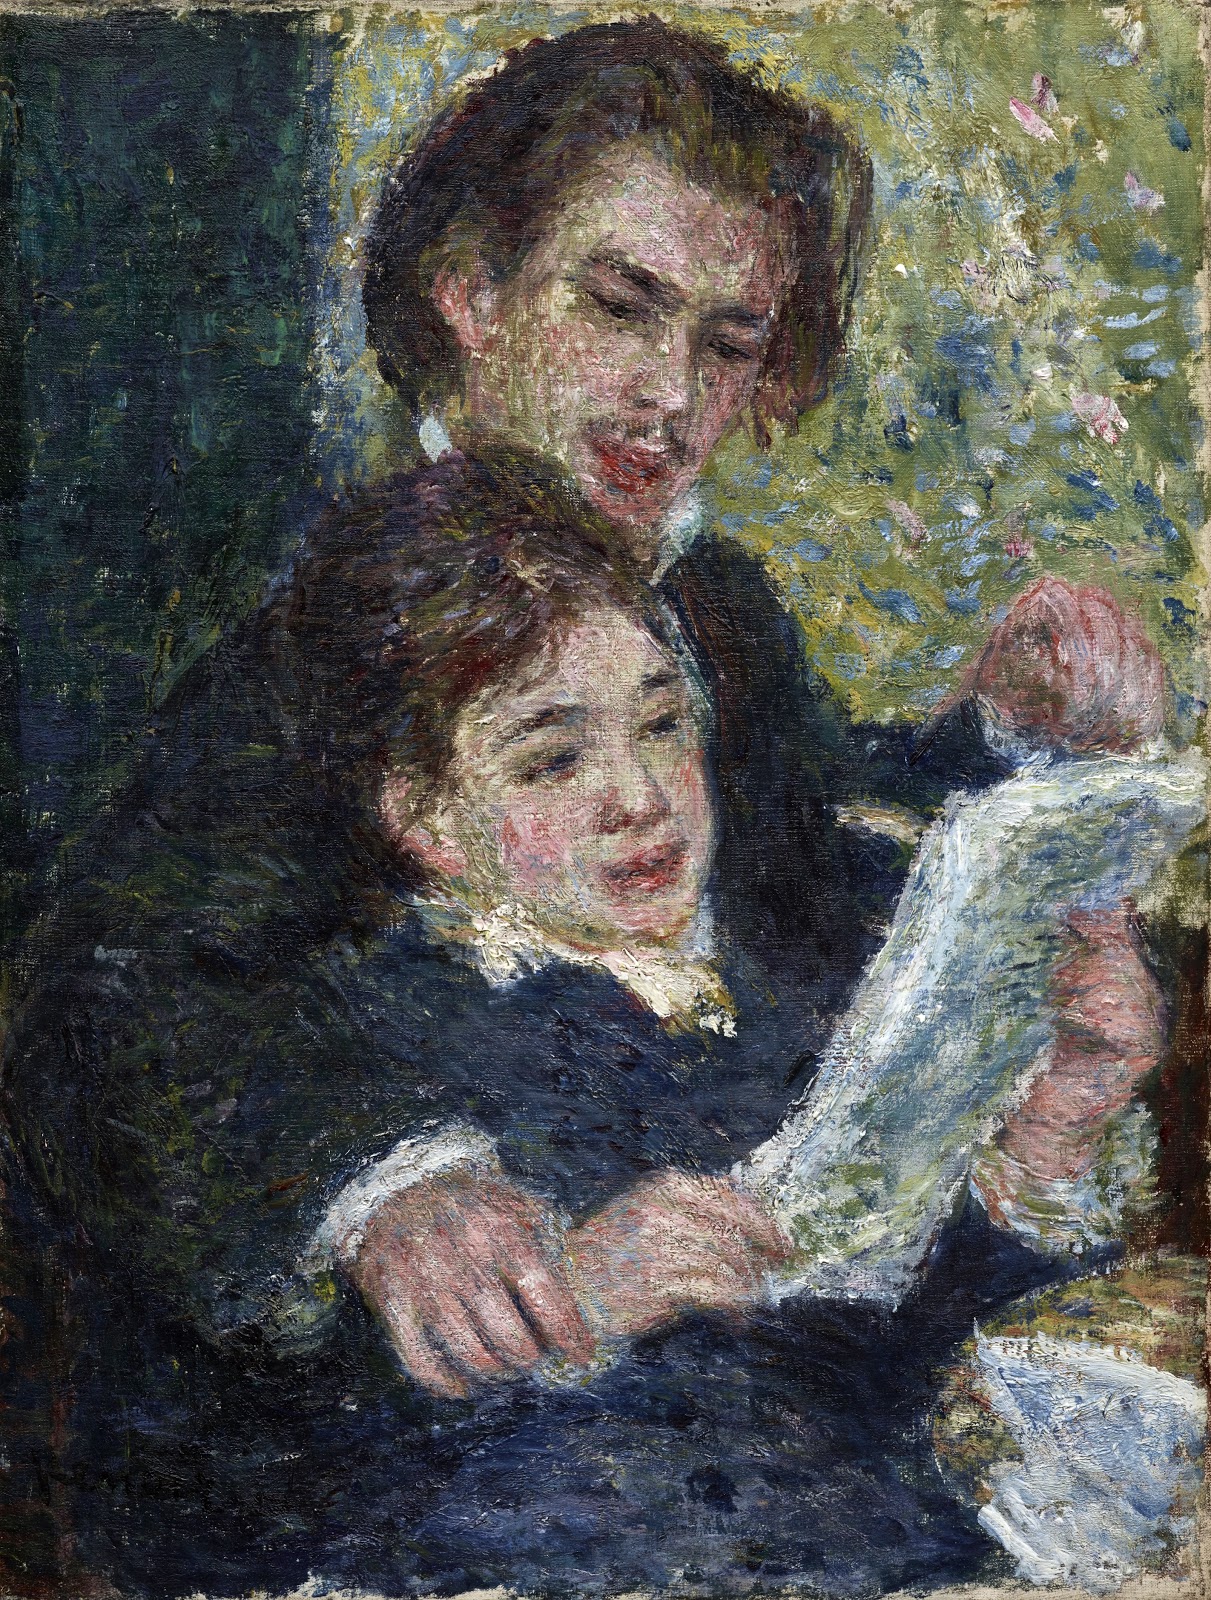 Pierre+Auguste+Renoir-1841-1-19 (969).jpg